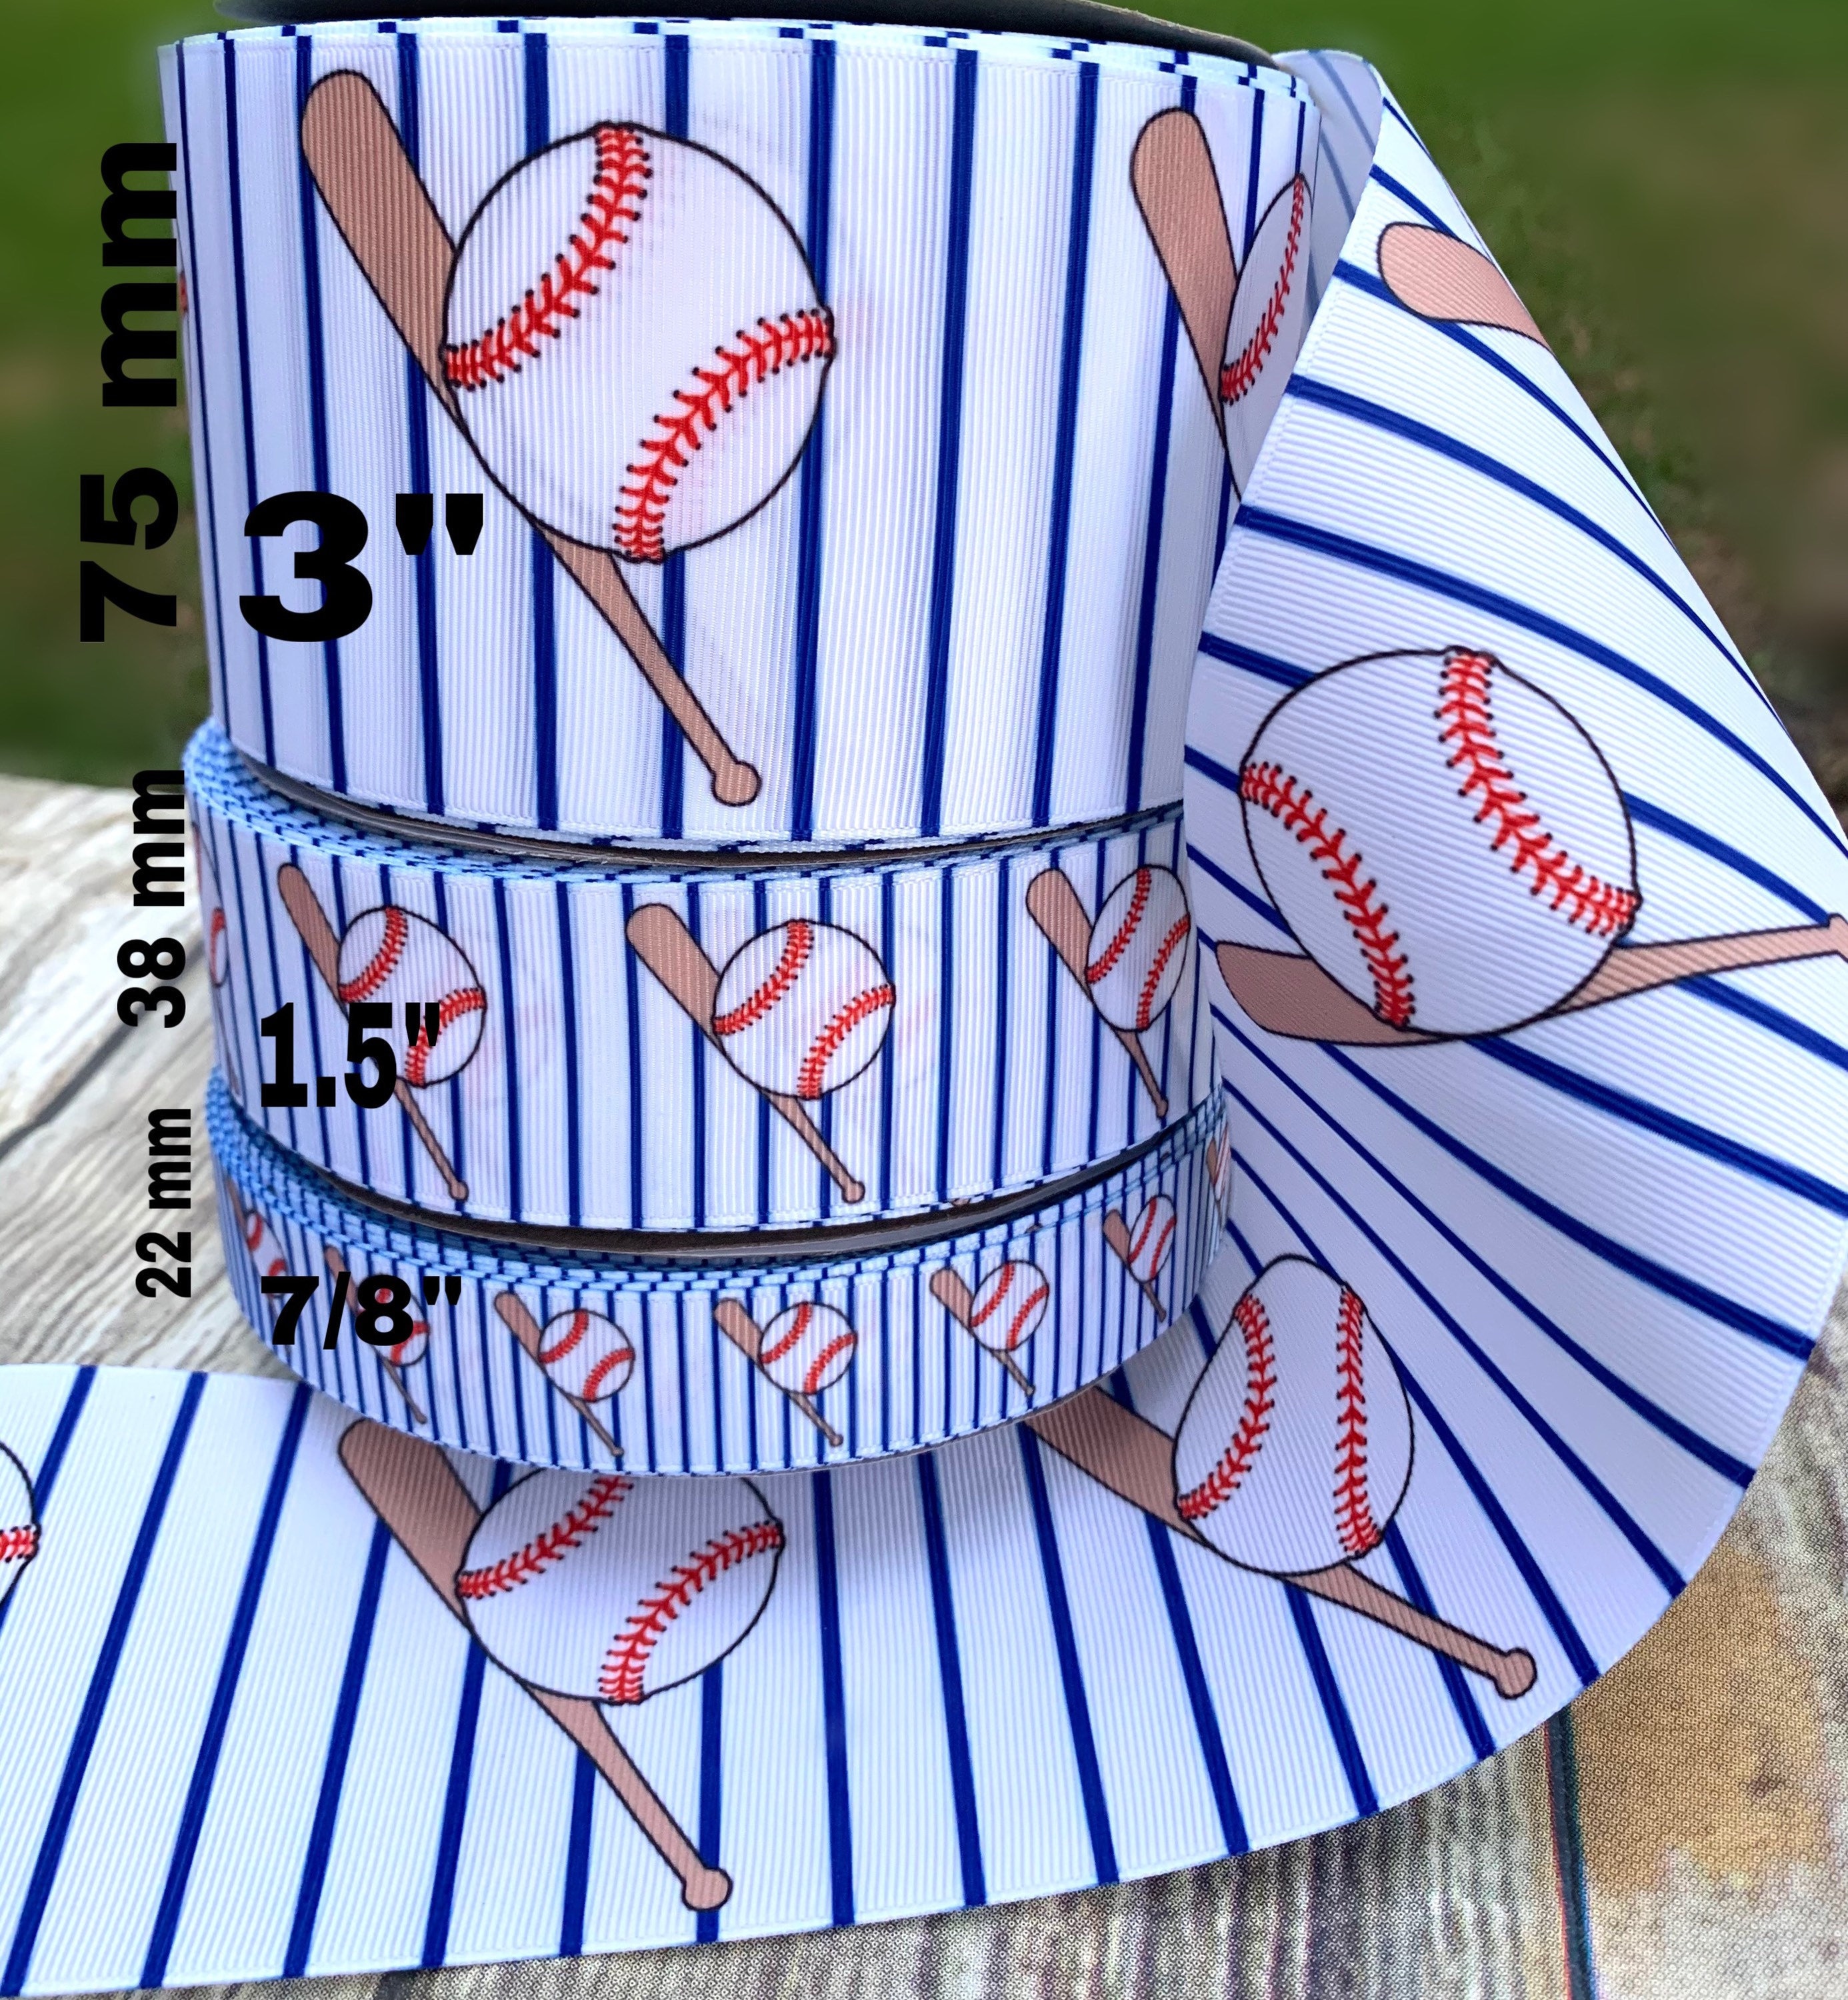 2.5 Wired Baseball Ribbon Baseball Stitched Ribbon 